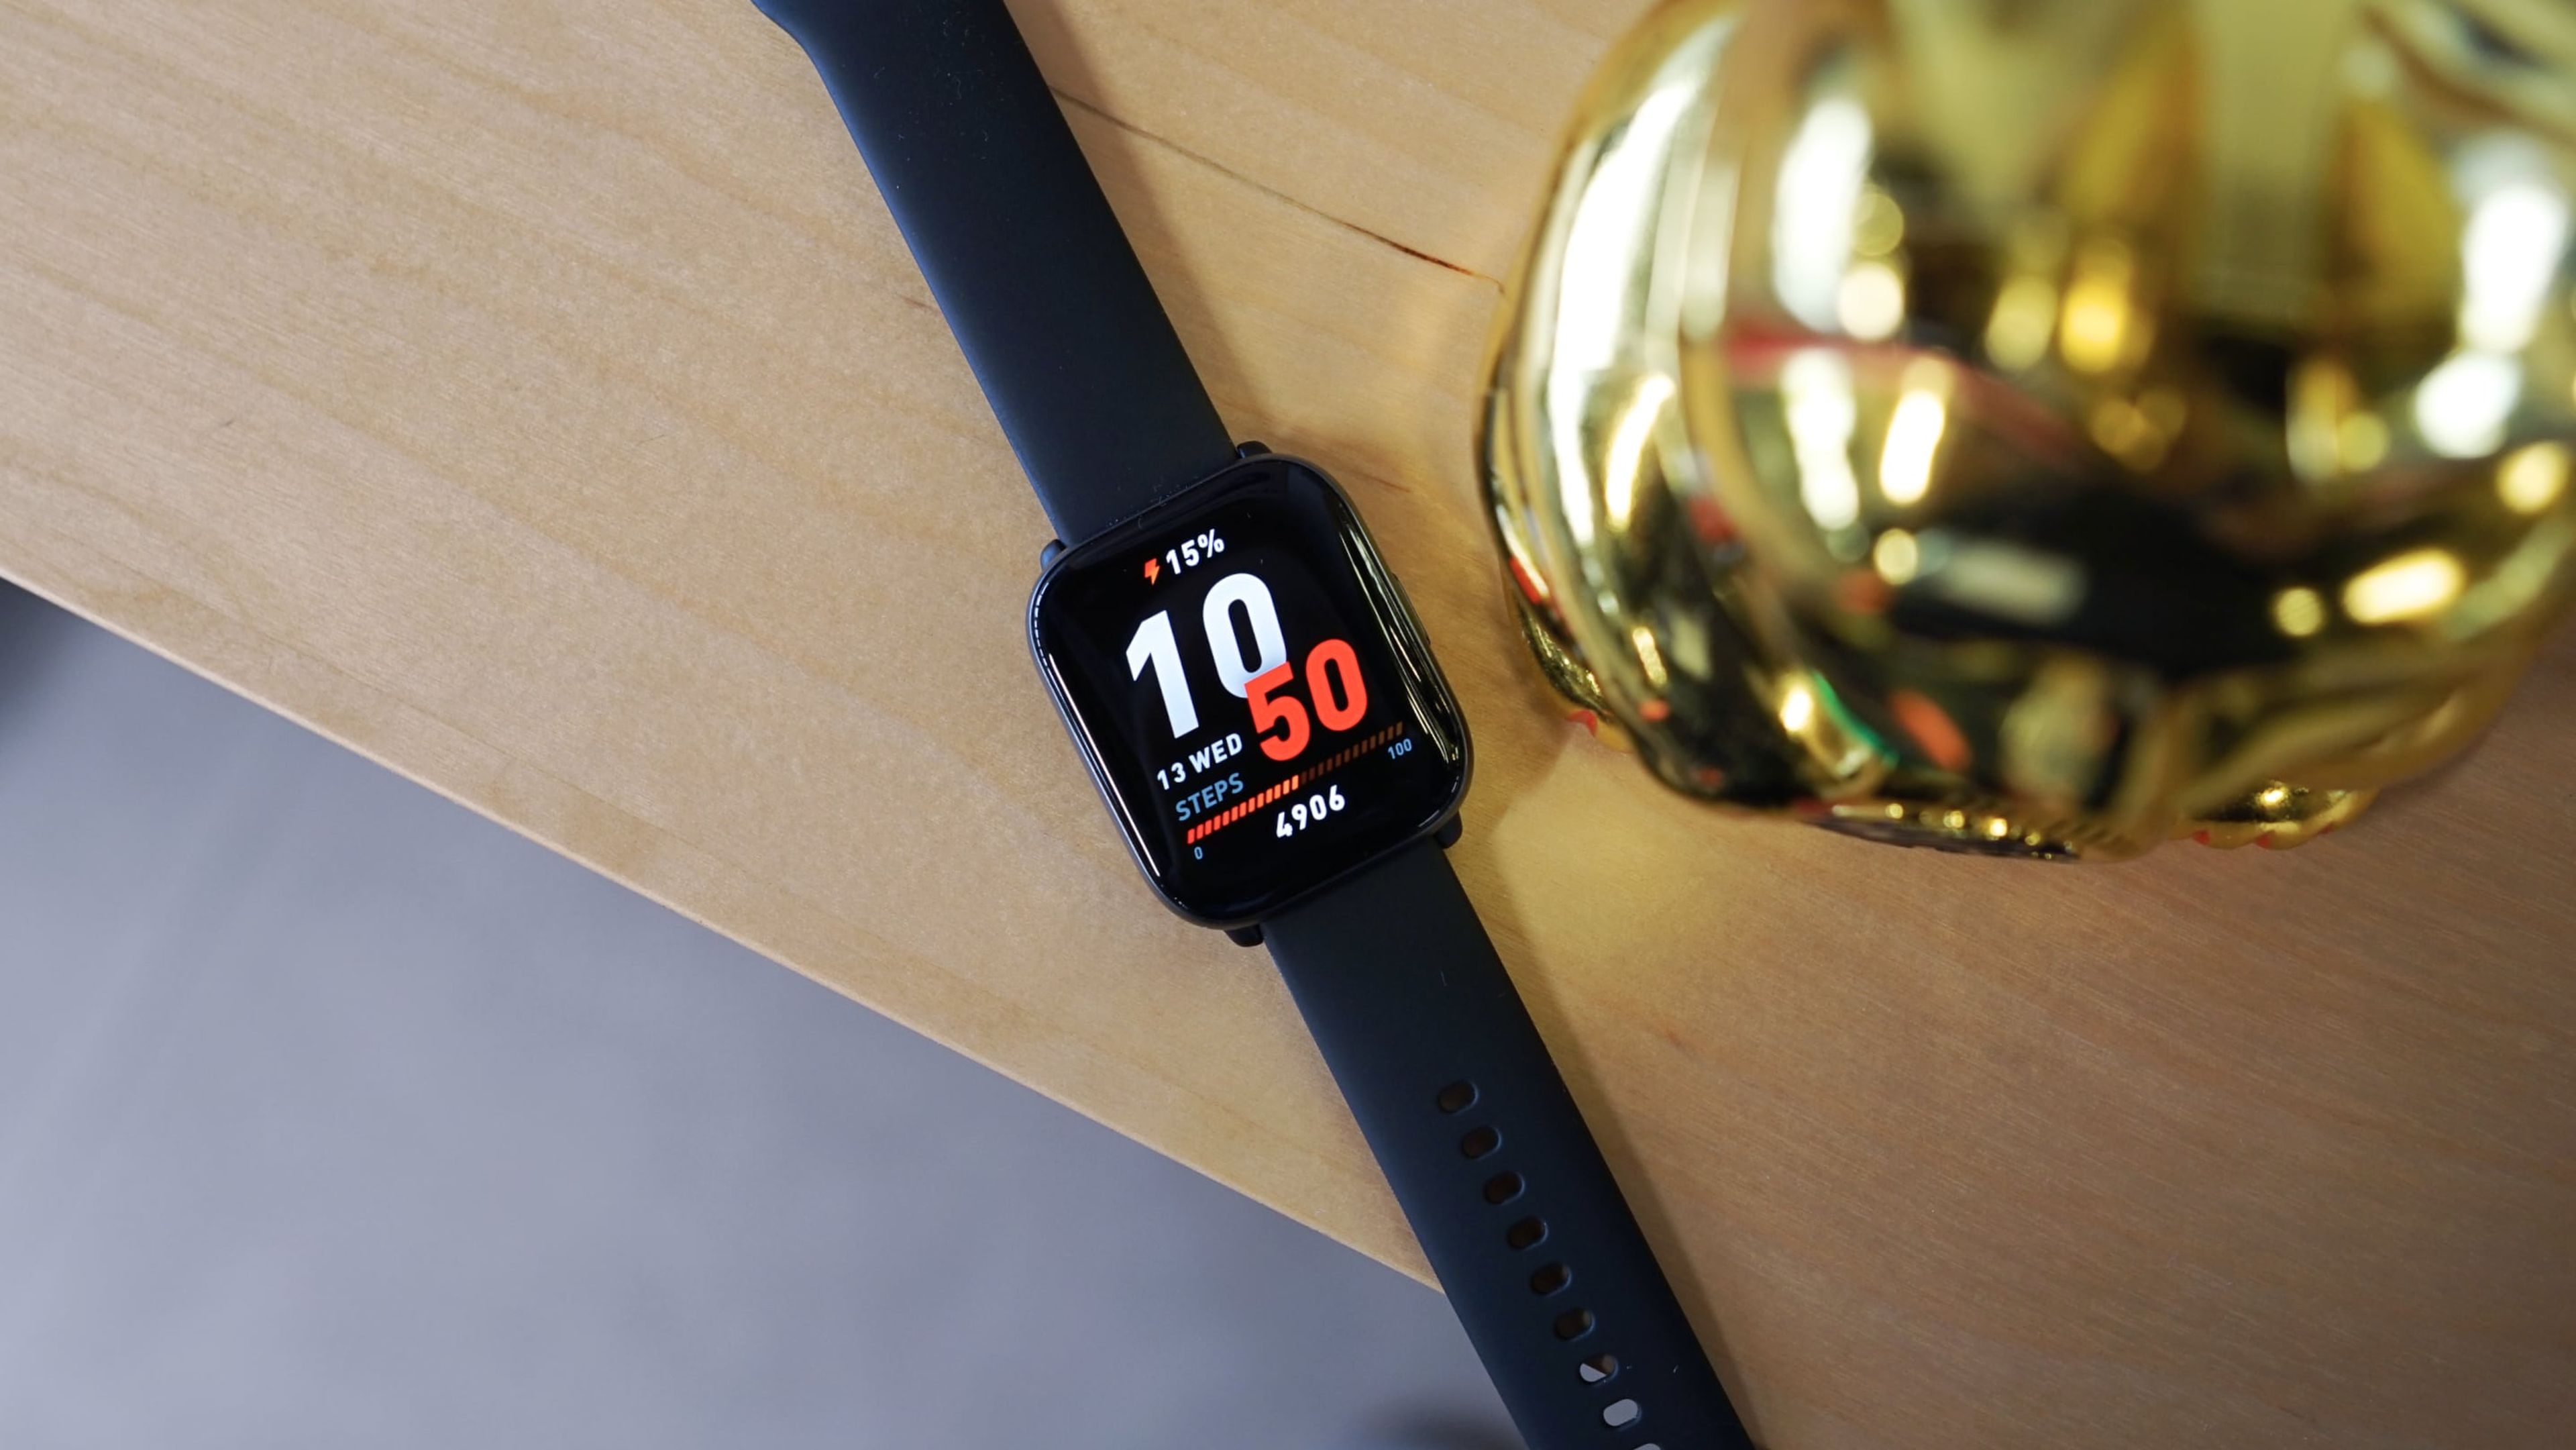 He probado el smartwatch Amazfit Active: esto es lo que debería ser un reloj  inteligente y barato para deportes